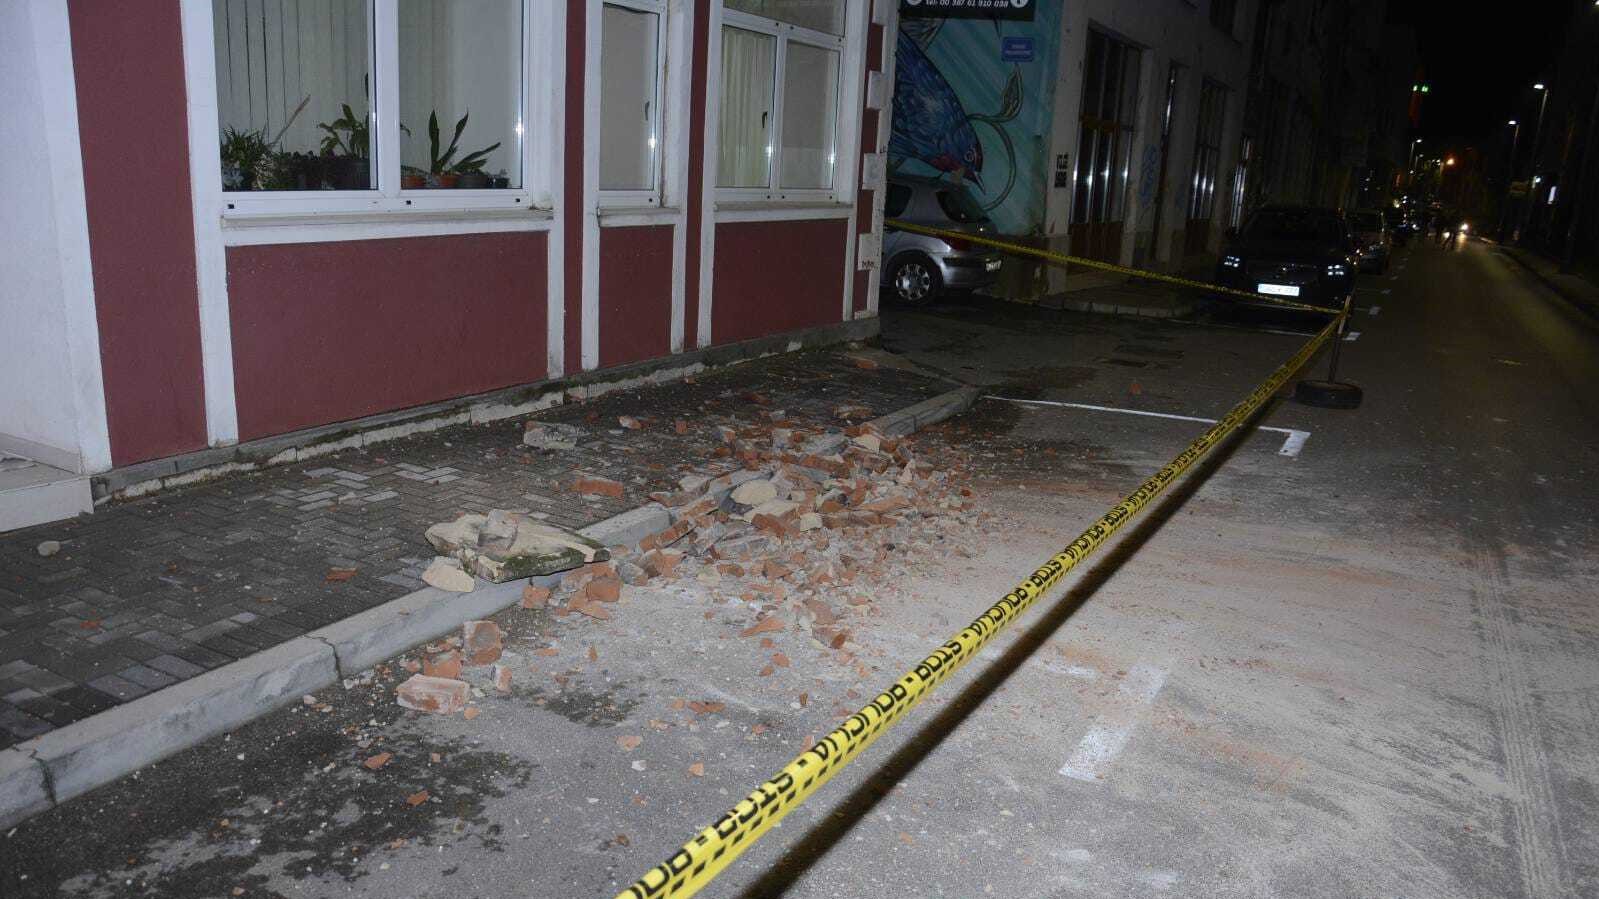 Földrengés okozta károk Mostarban (Fotó: Zeljko Milicevic/Anadolu Agency via Getty Images)